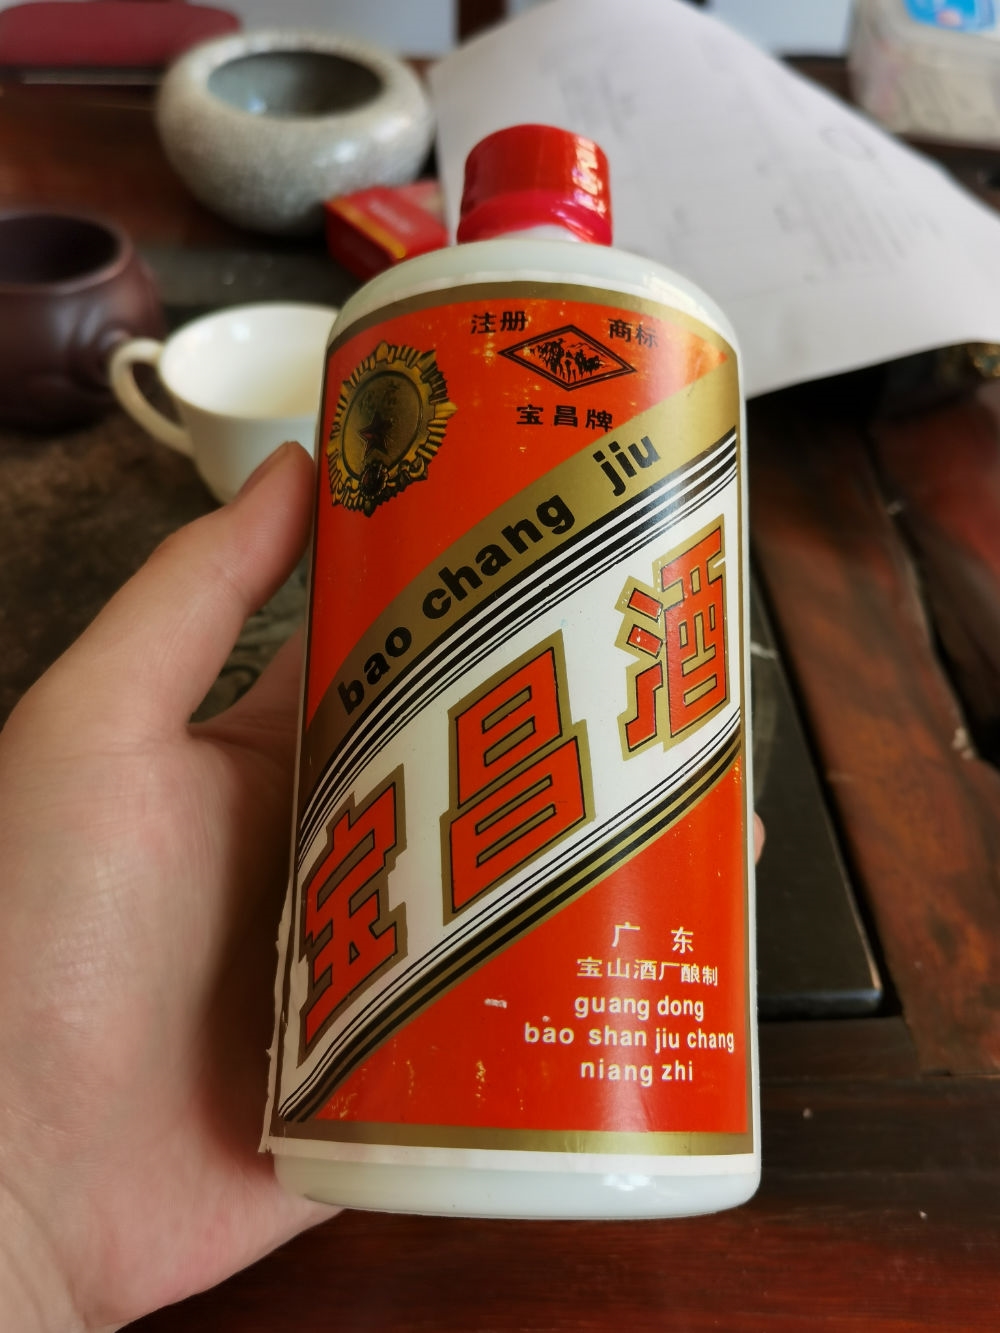 北京老酒行==广东宝山酒厂==宝昌酒===少见品种